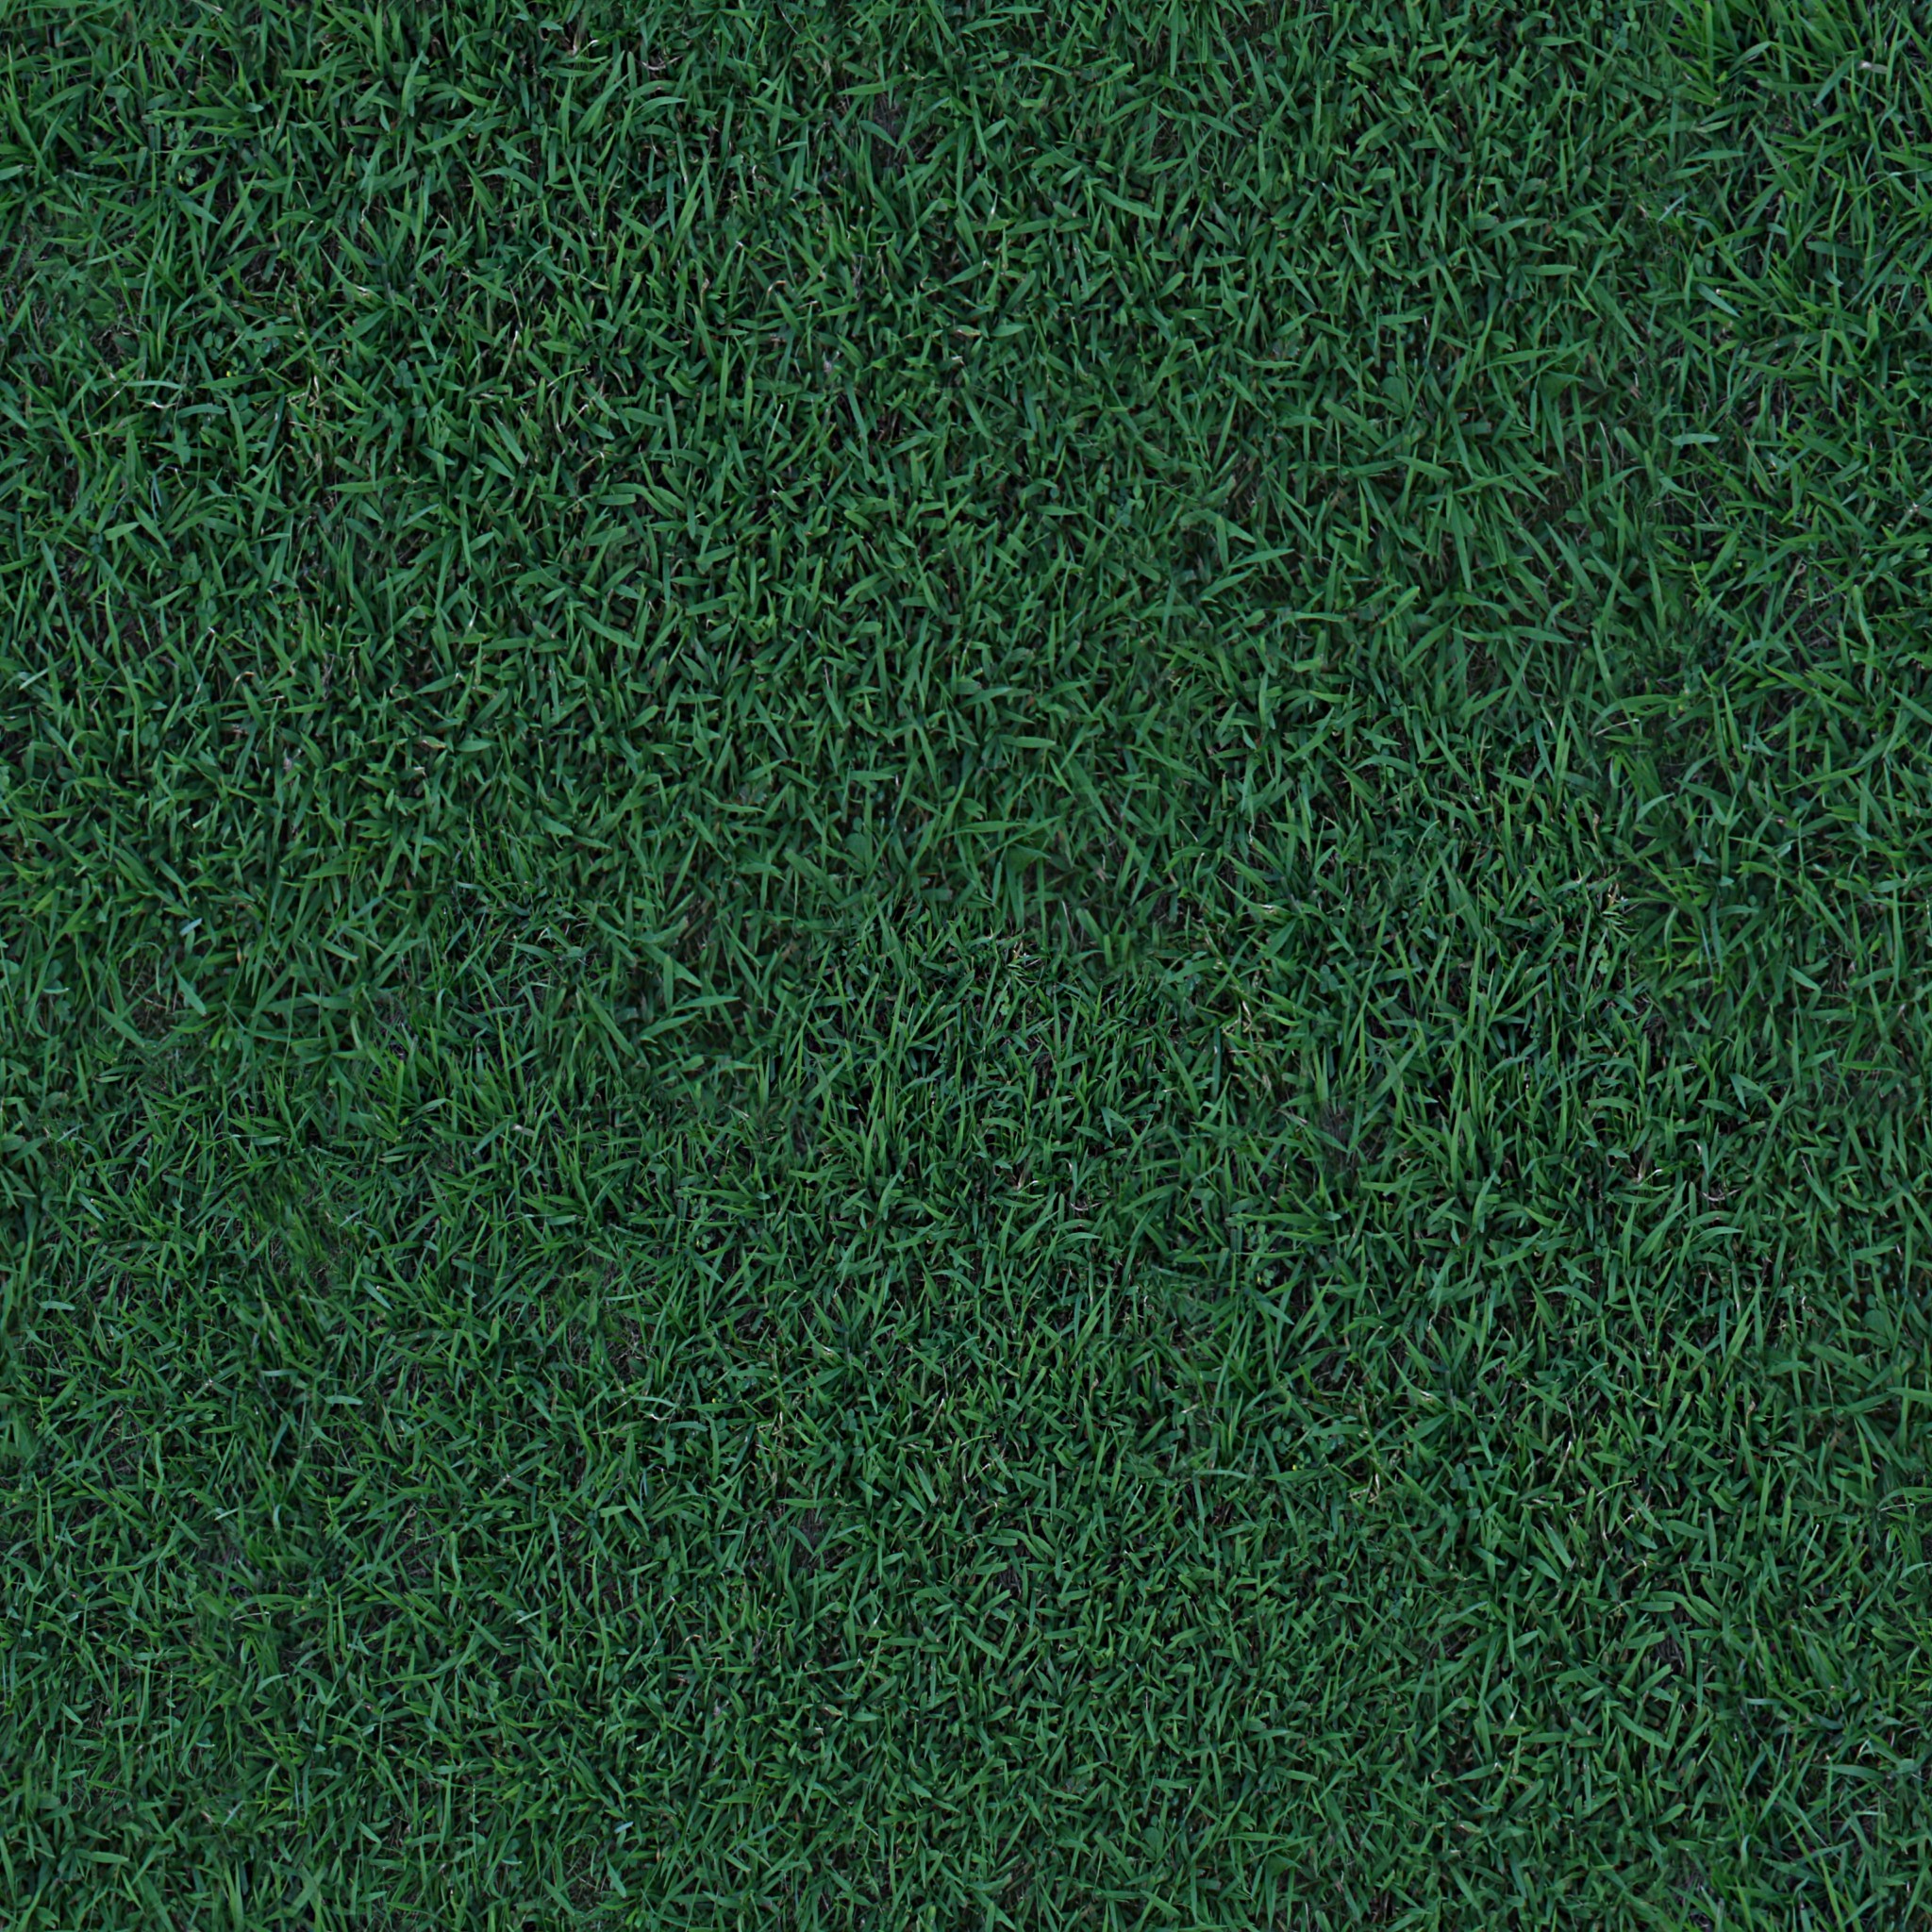 dark grass texture seamless